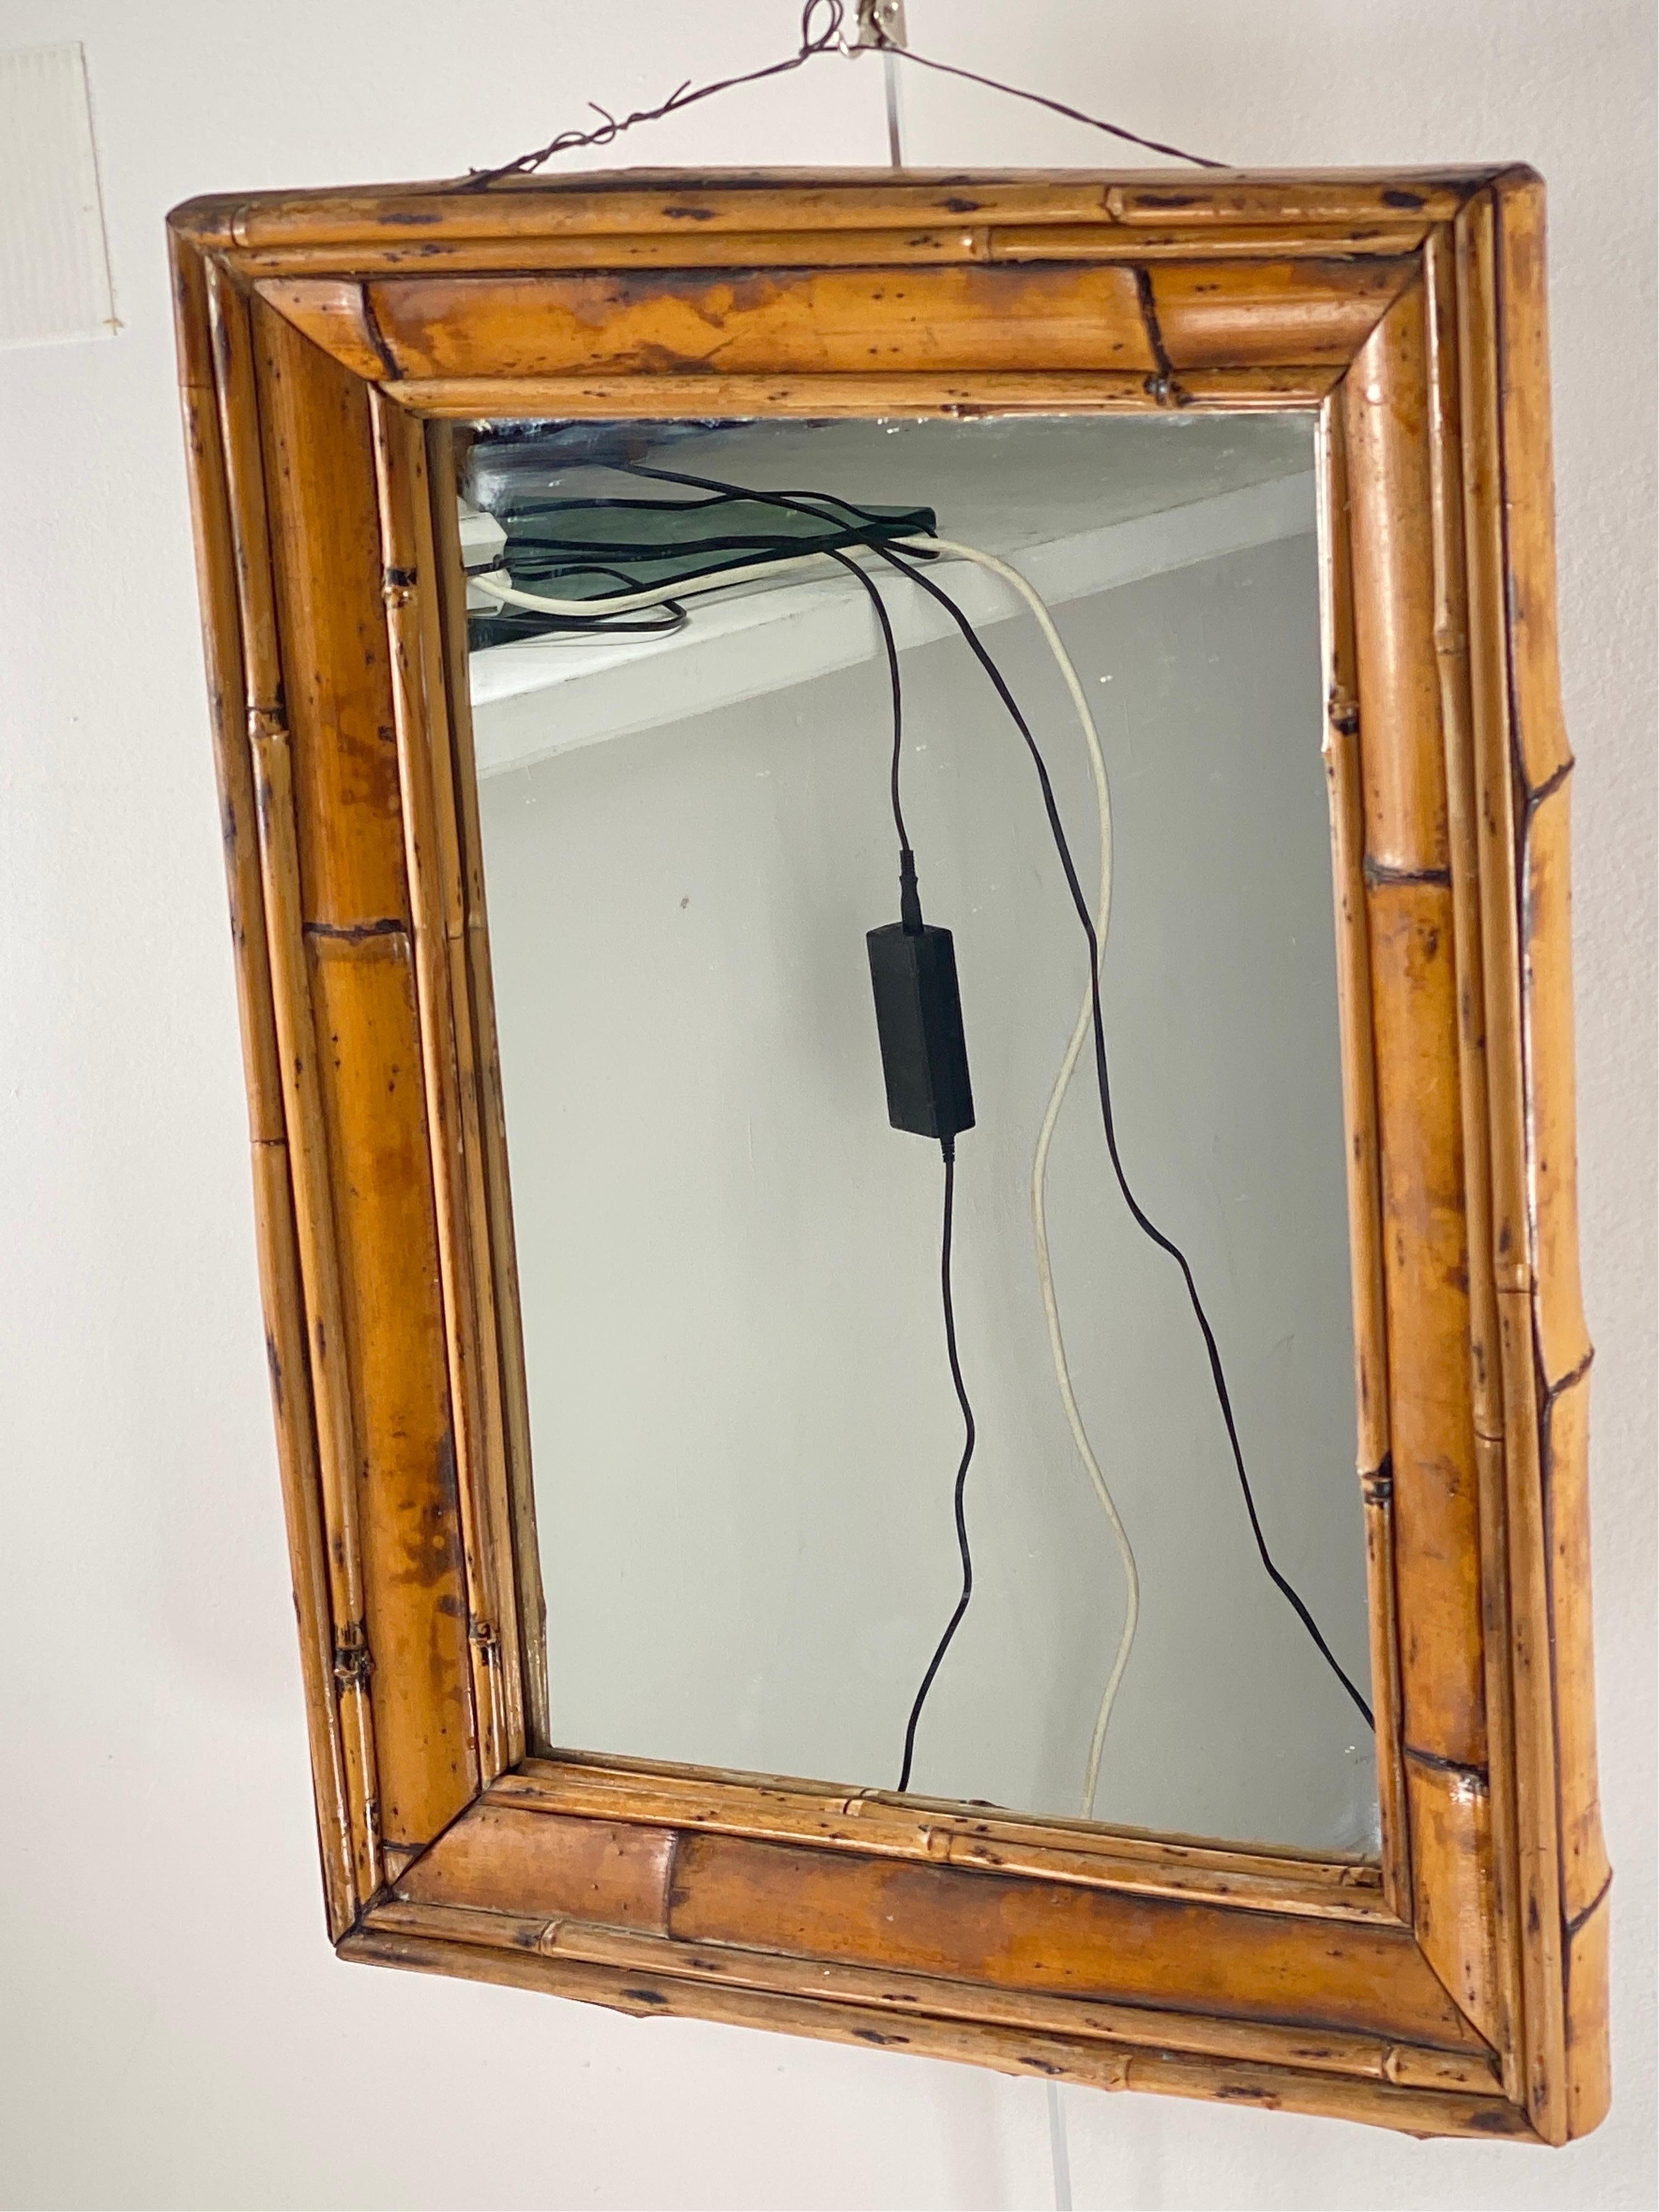 Il s'agit d'un miroir en bambou et rotin. Fabriqué en Italie vers 1950. La couleur est marron.